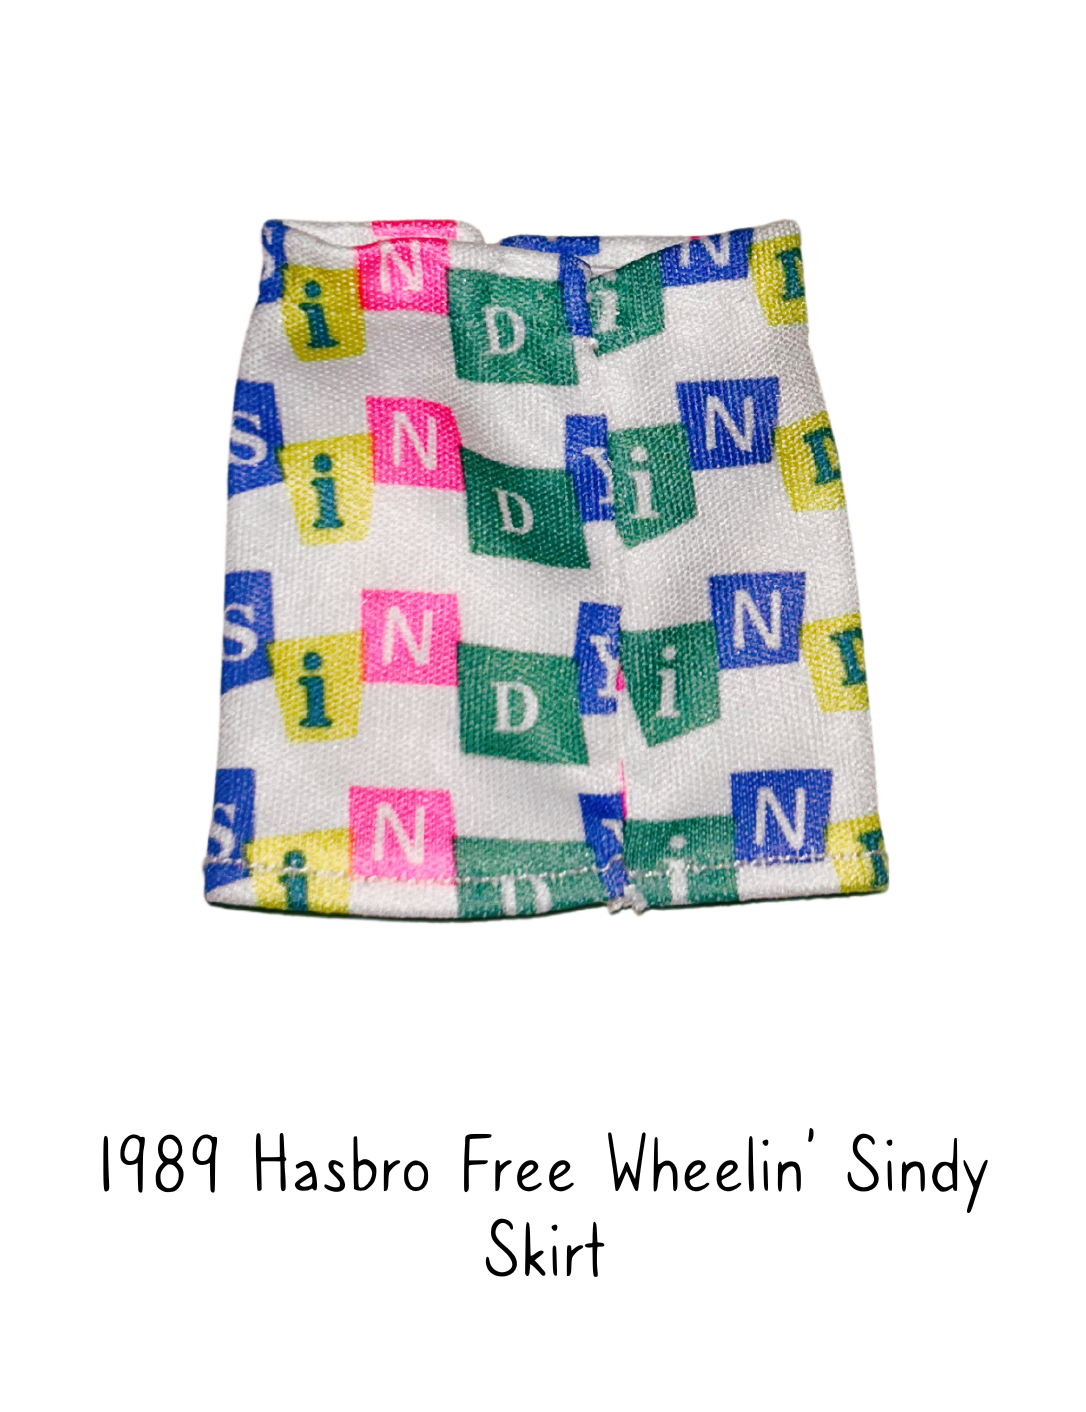 1989 Hasbro Free Wheelin' Sindy Skirt